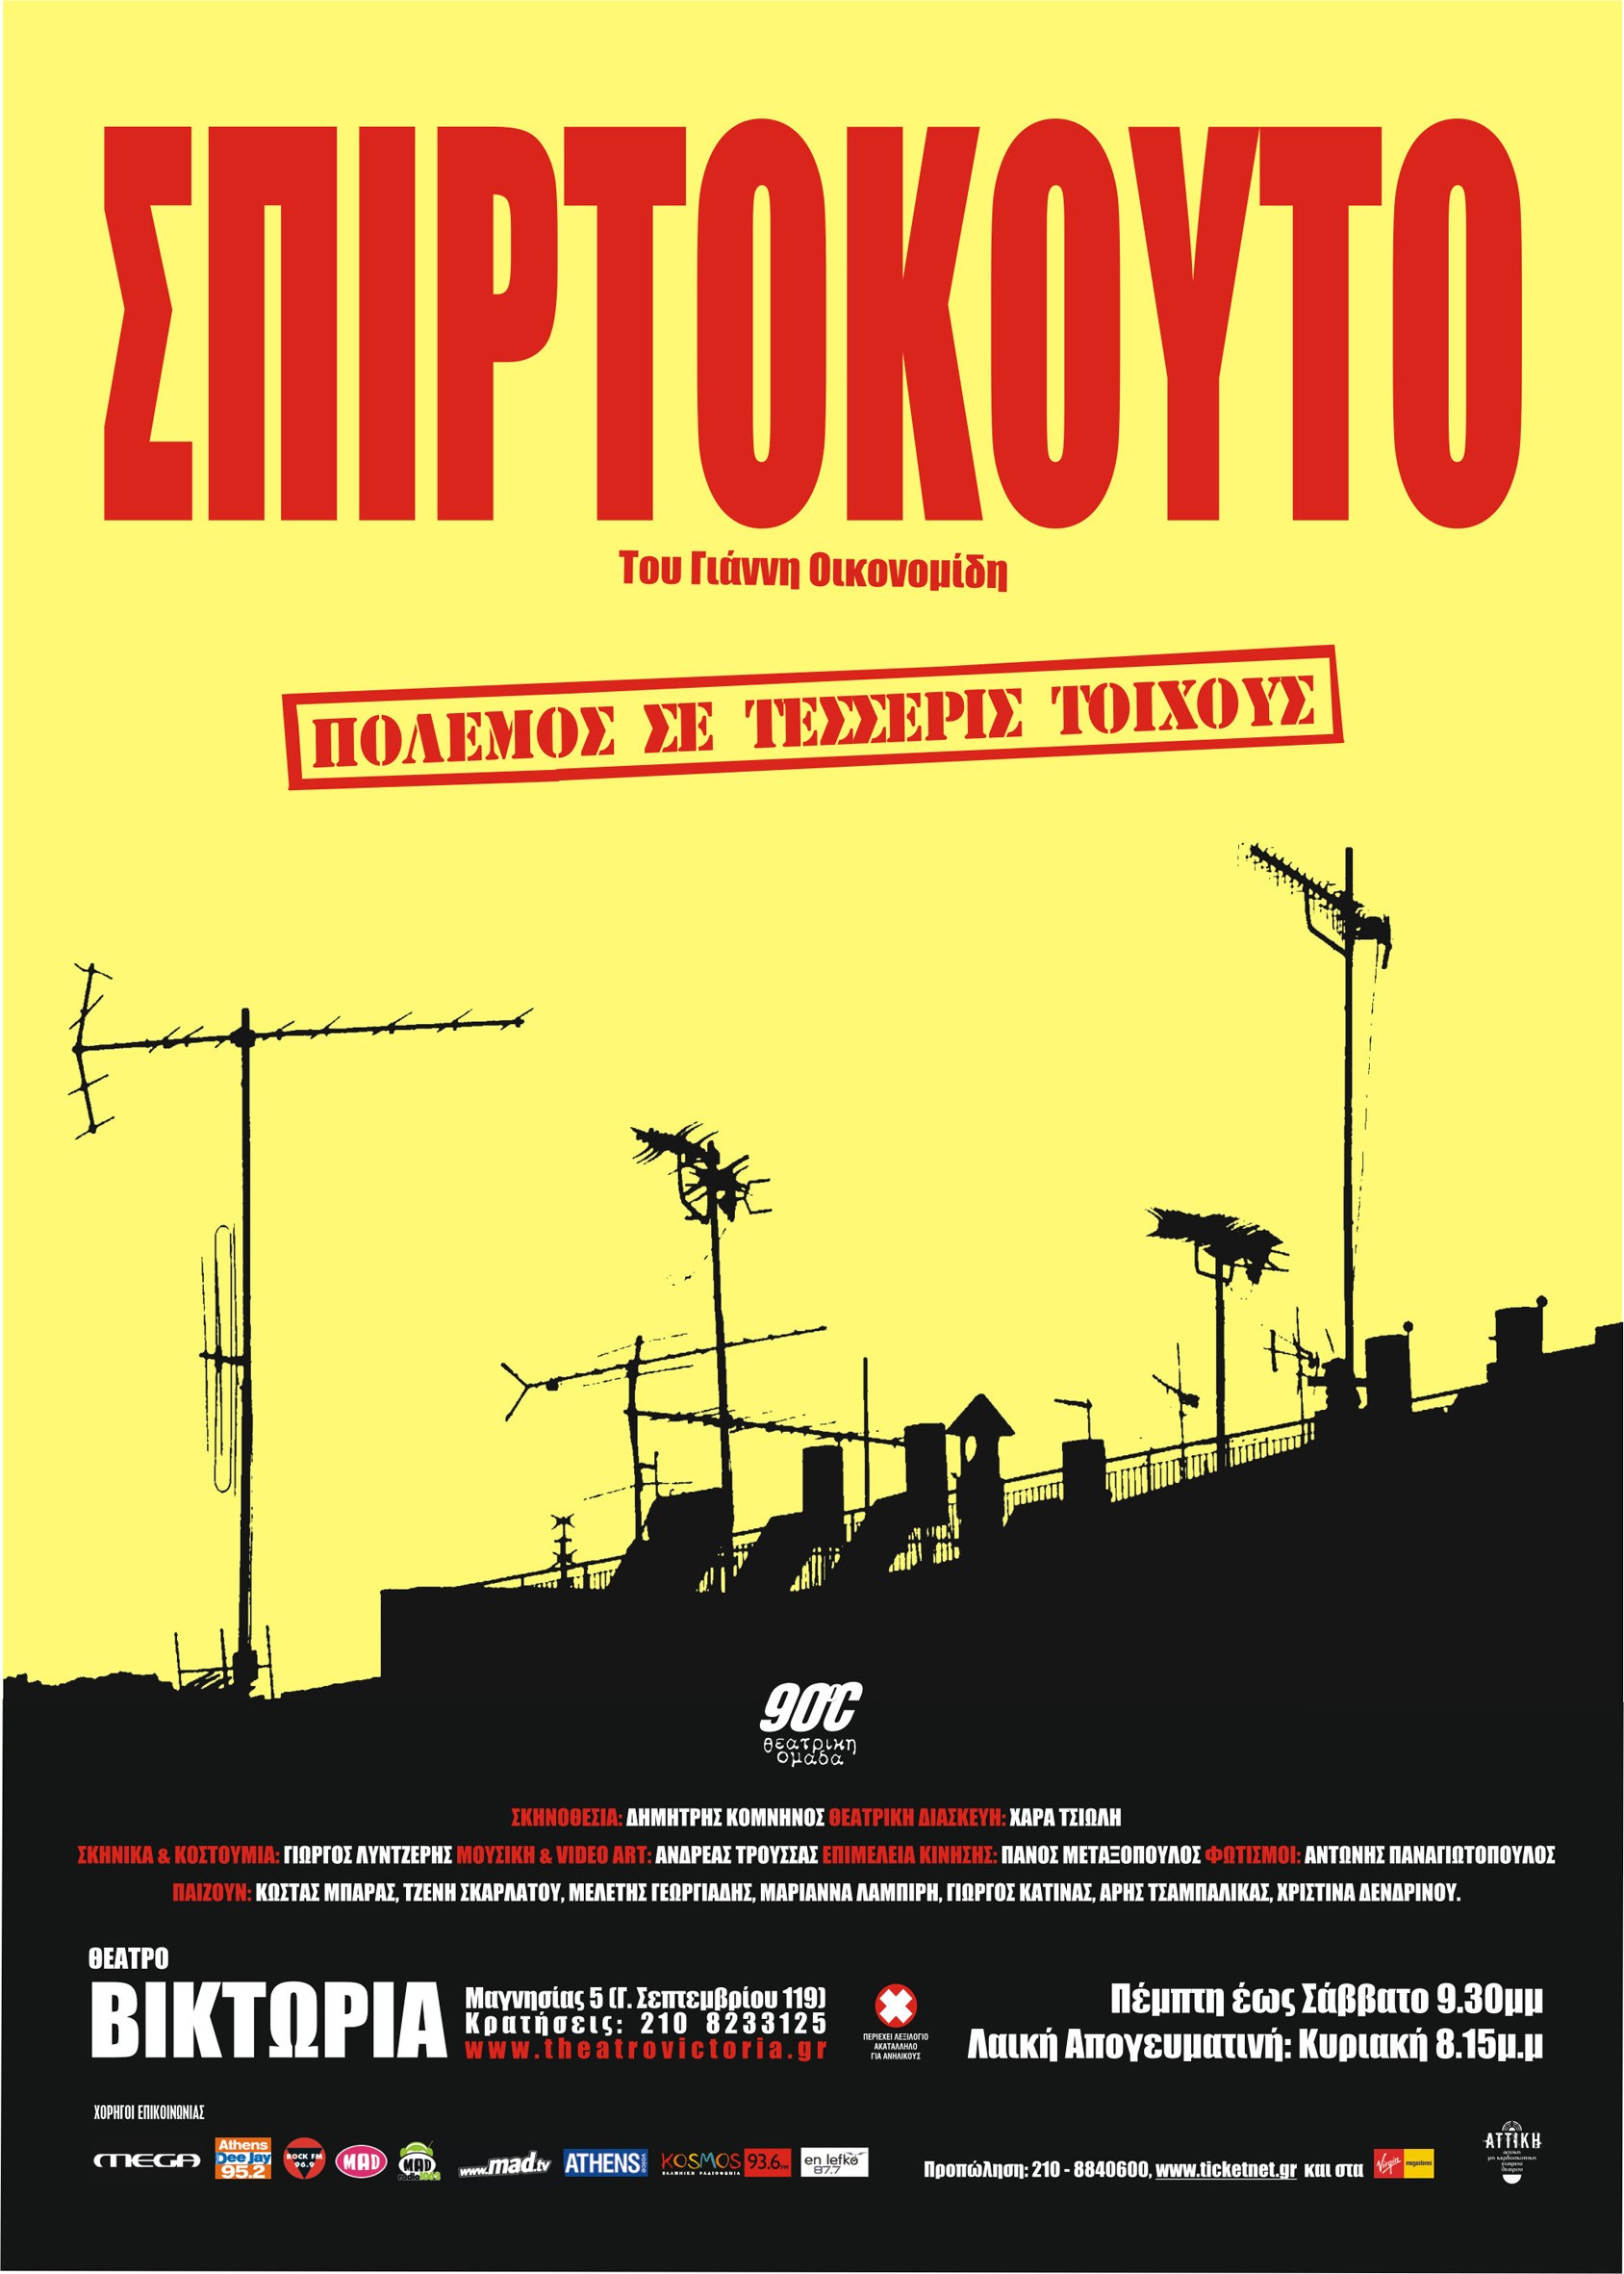 Mega Sized Movie Poster Image for Spirtokouto 